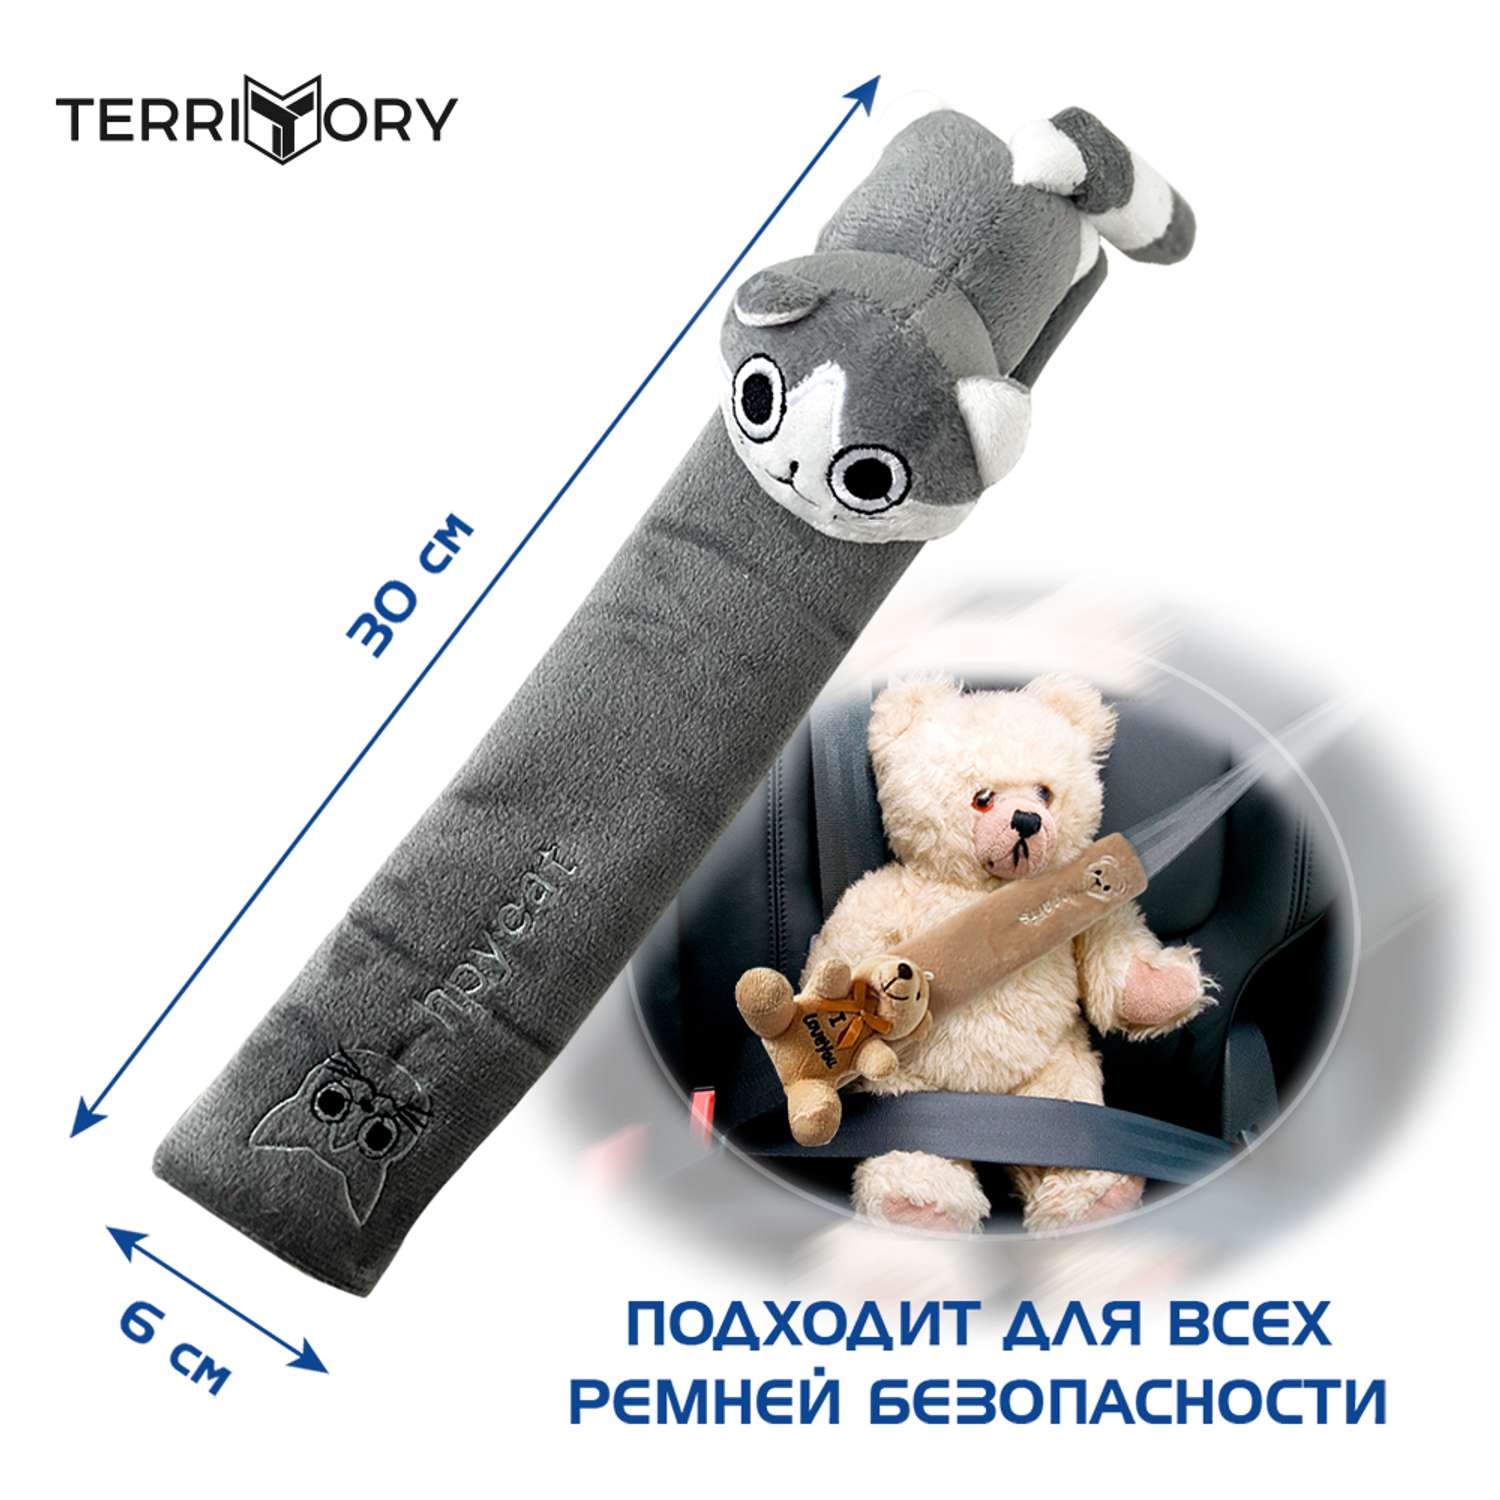 Накладка на ремень Territory безопасности детская с мягкой игрушкой серый котик - фото 4